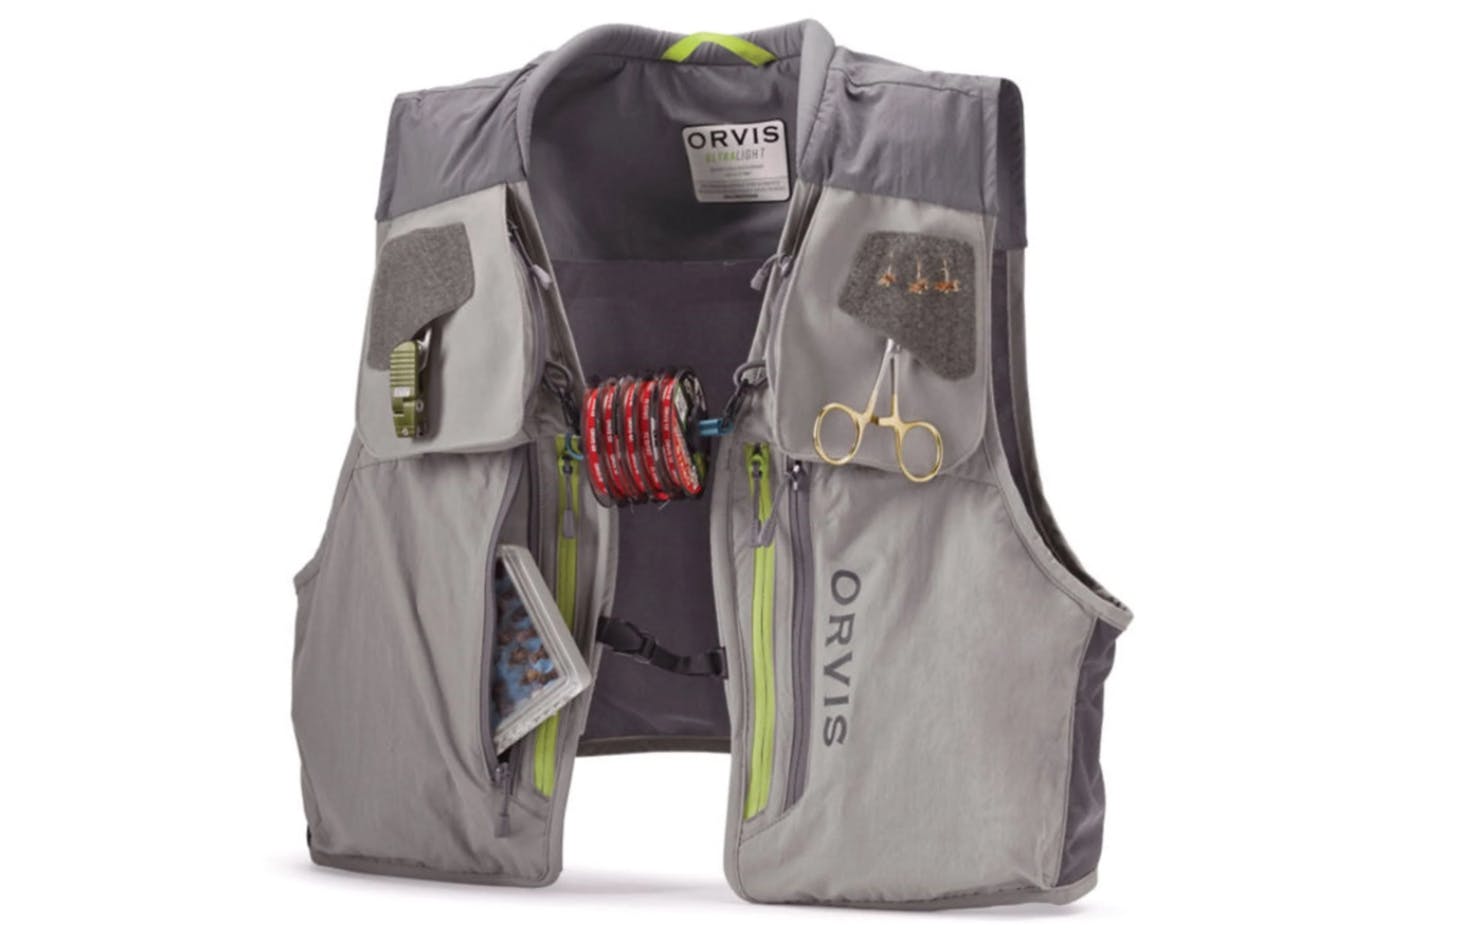 The Orvis Ultralight Vest.